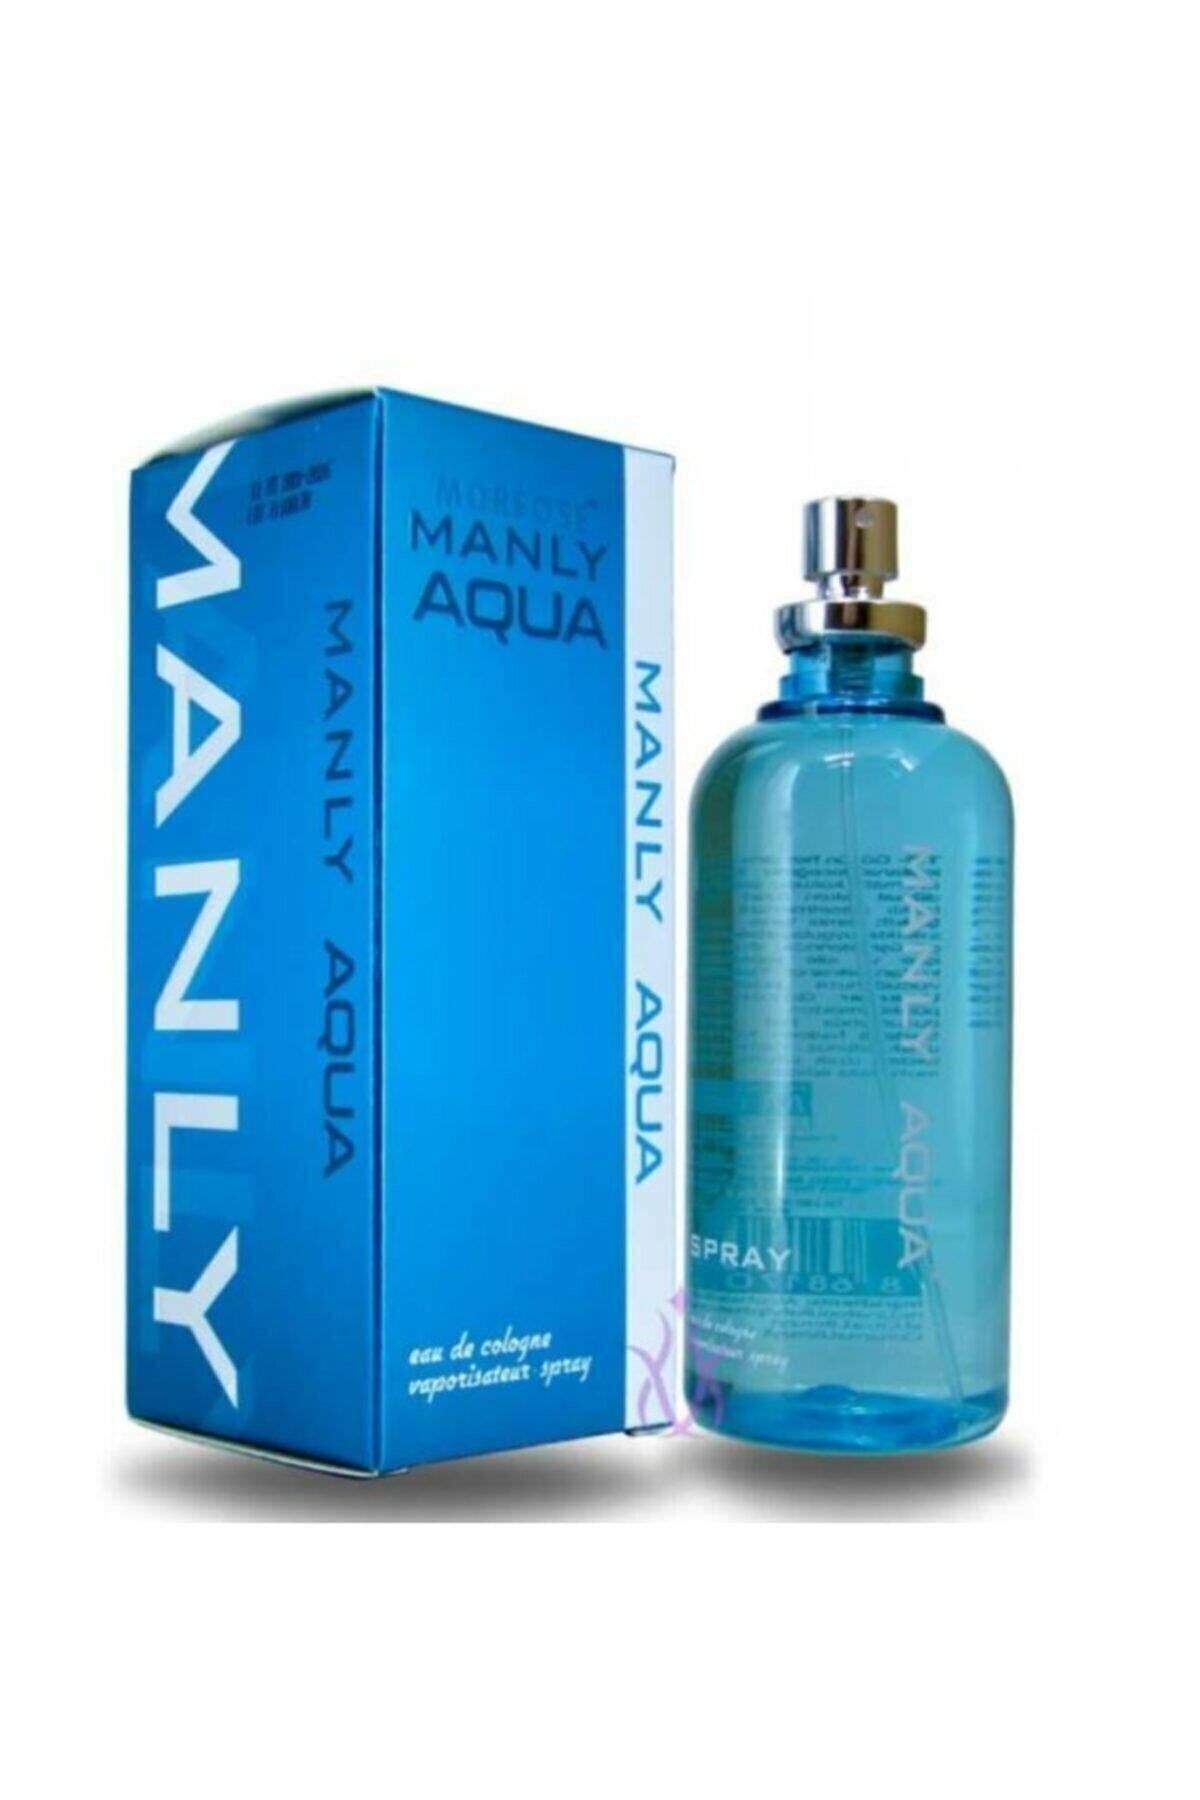 Manly Aqua Edc 125 Ml Erkek Parfüm